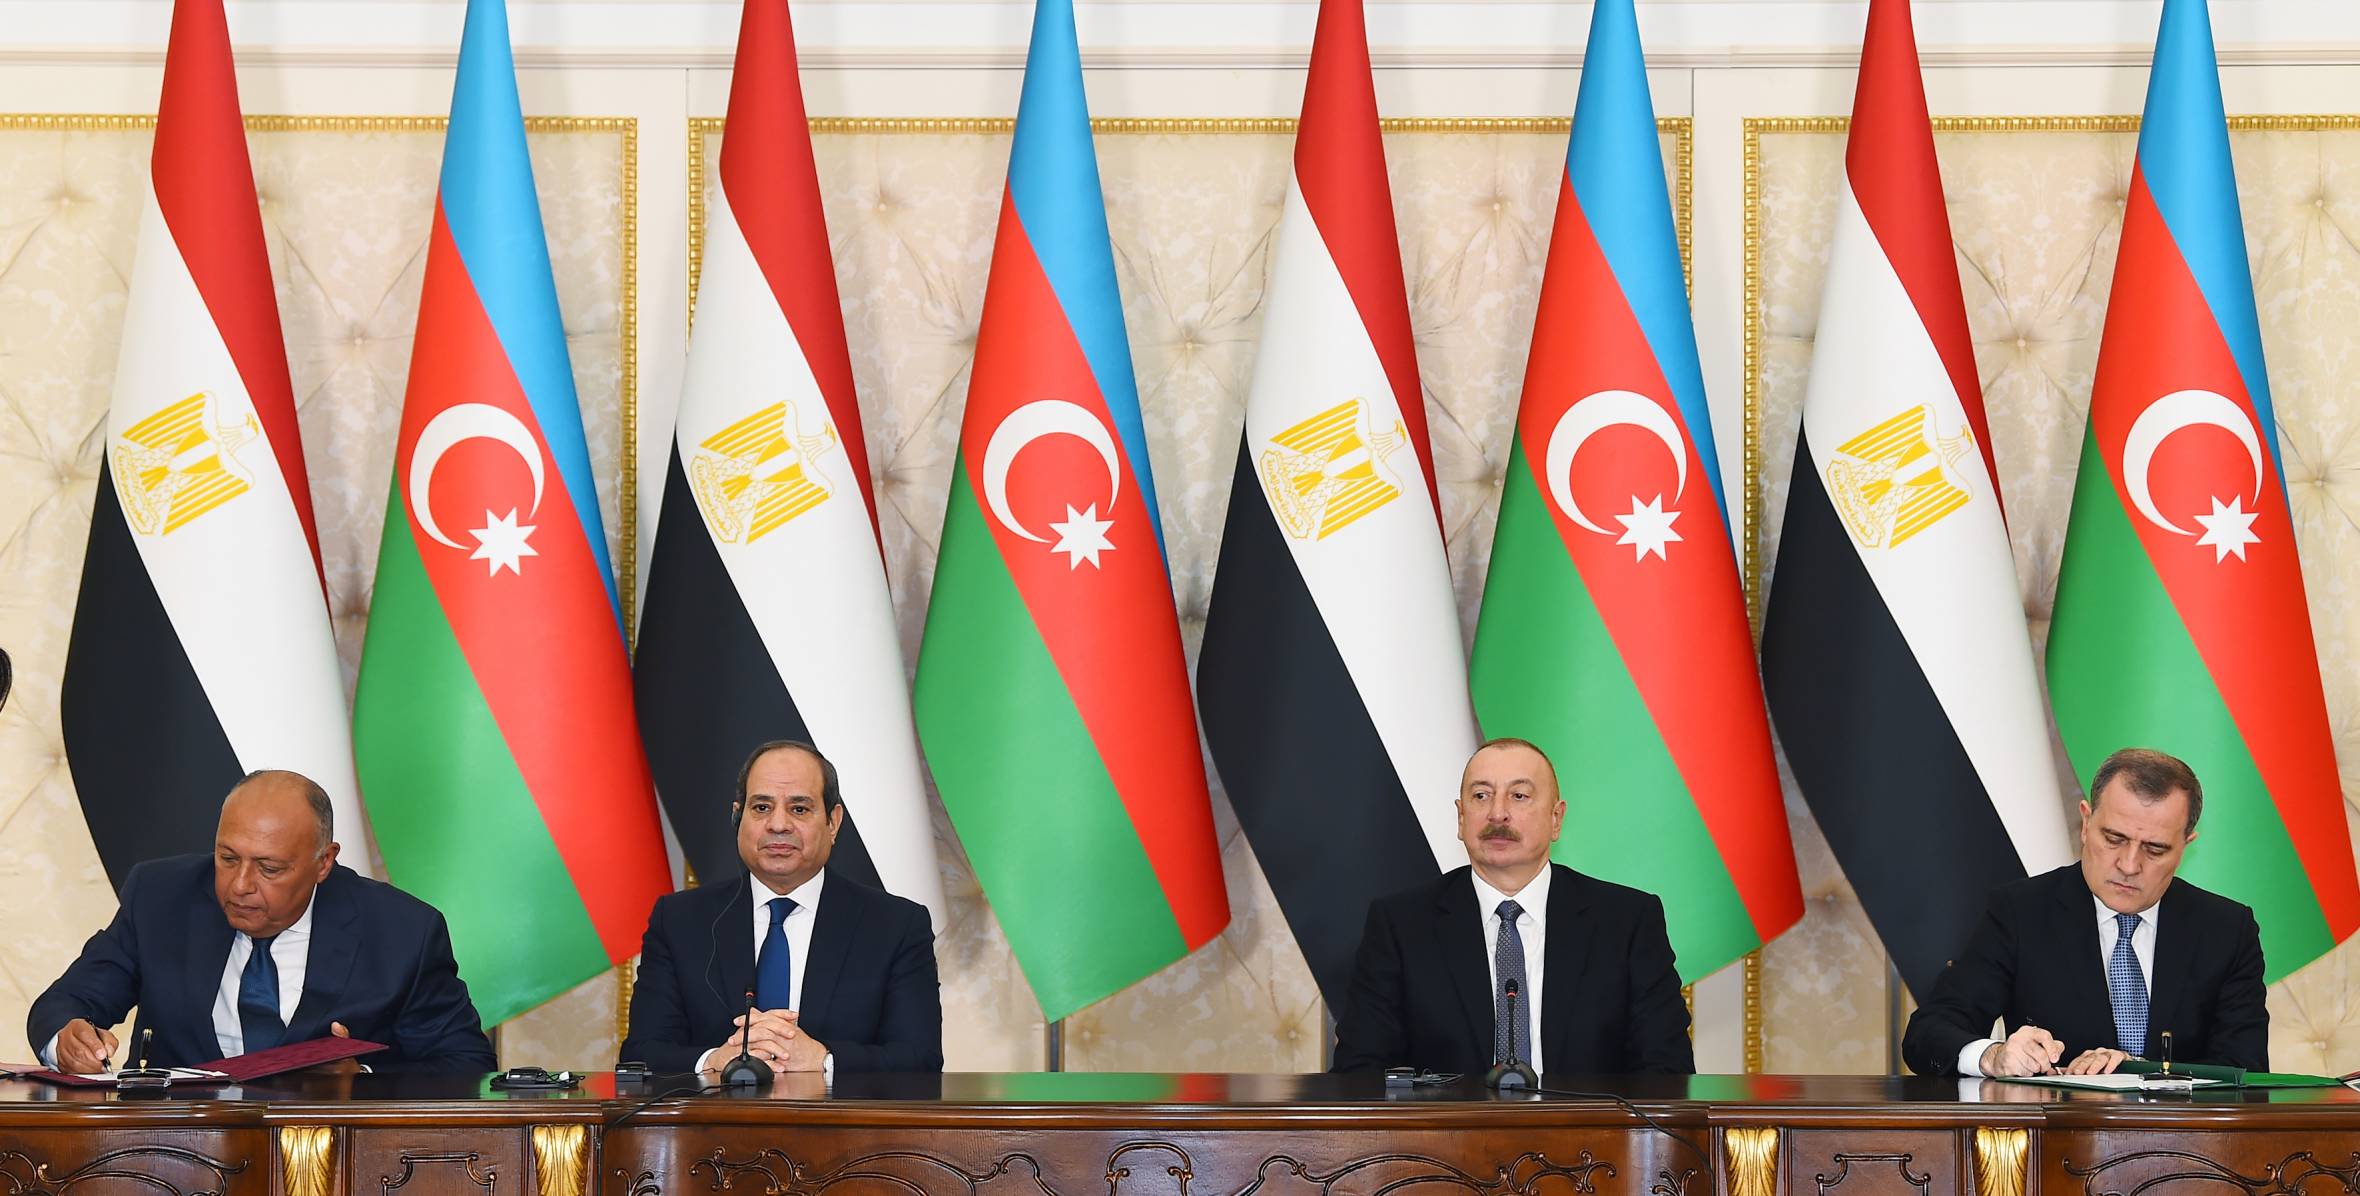 Состоялось подписание азербайджано-египетских документов